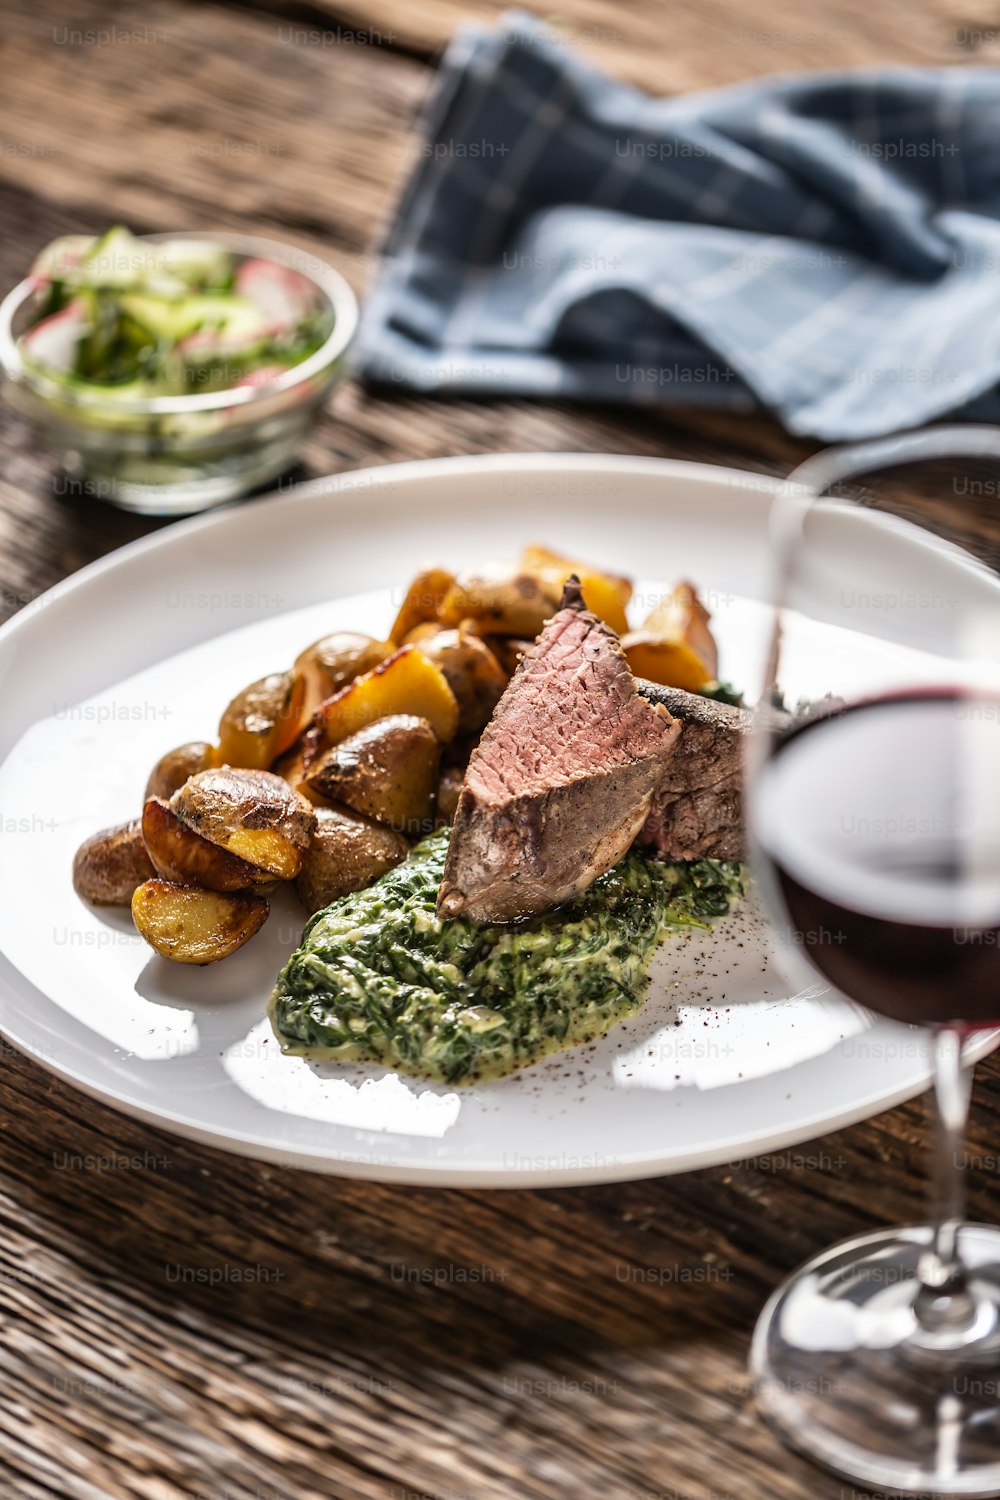 赤ワインは、ローストポテト、ほうれん草のディップ、新鮮なサラダを添えた赤身の真空調理ステーキを、木製の机の上の白い磁器の皿に盛り付けてお召し上がりいただけます。